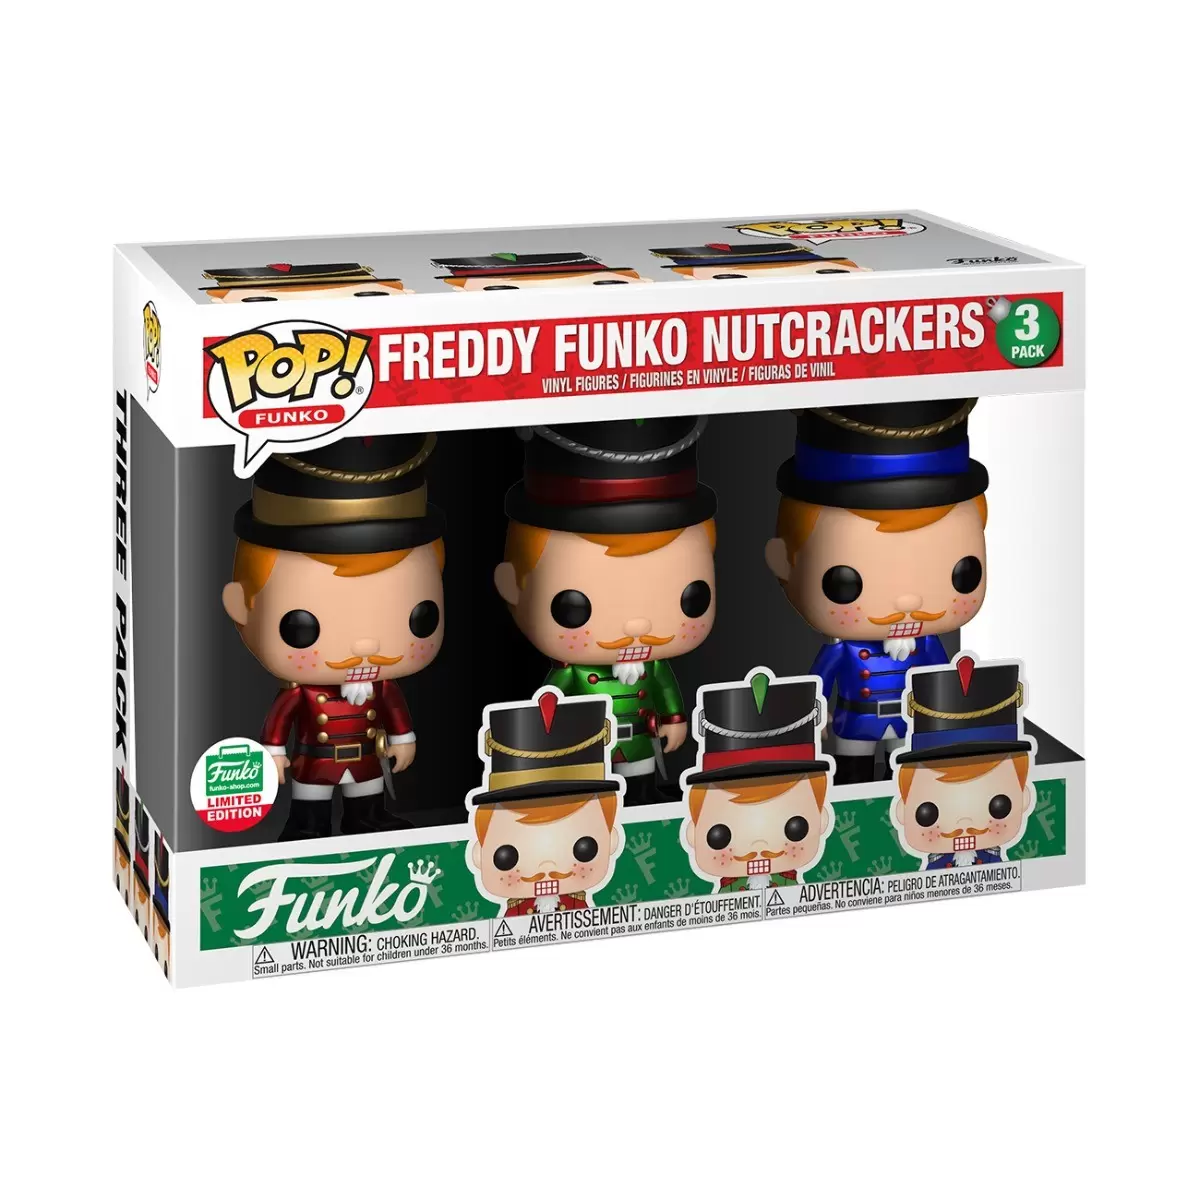 POP! Funko - Freddy Funko Nutcrackers 3 Pack